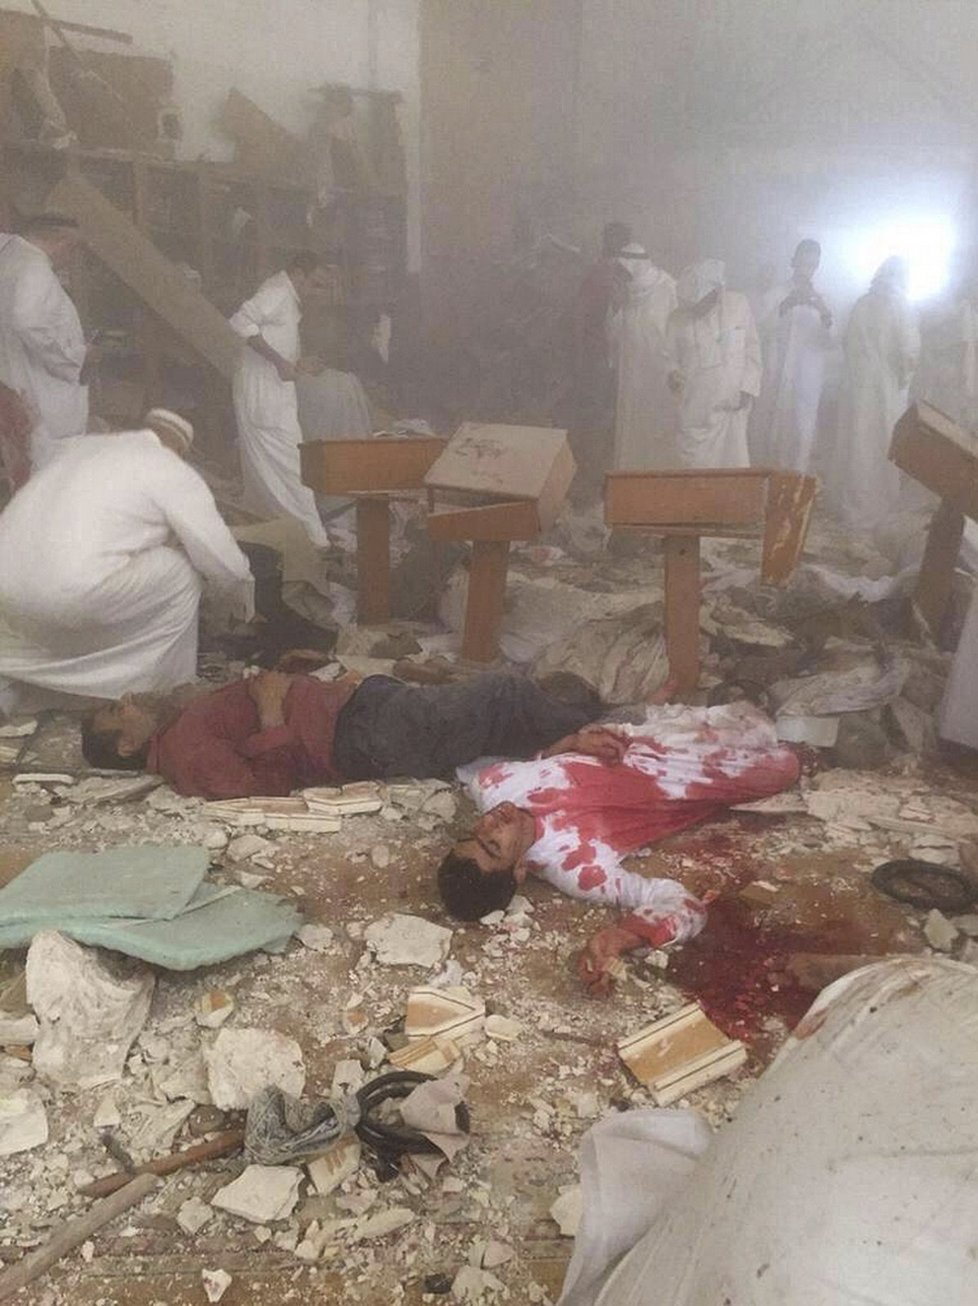 Podobný incident se odehrál nedávno i v Kuvajtu - Pumový atentátník u šíitské mešity svým odpálením zabil 27 lidí a přes 200 dalších zranil.